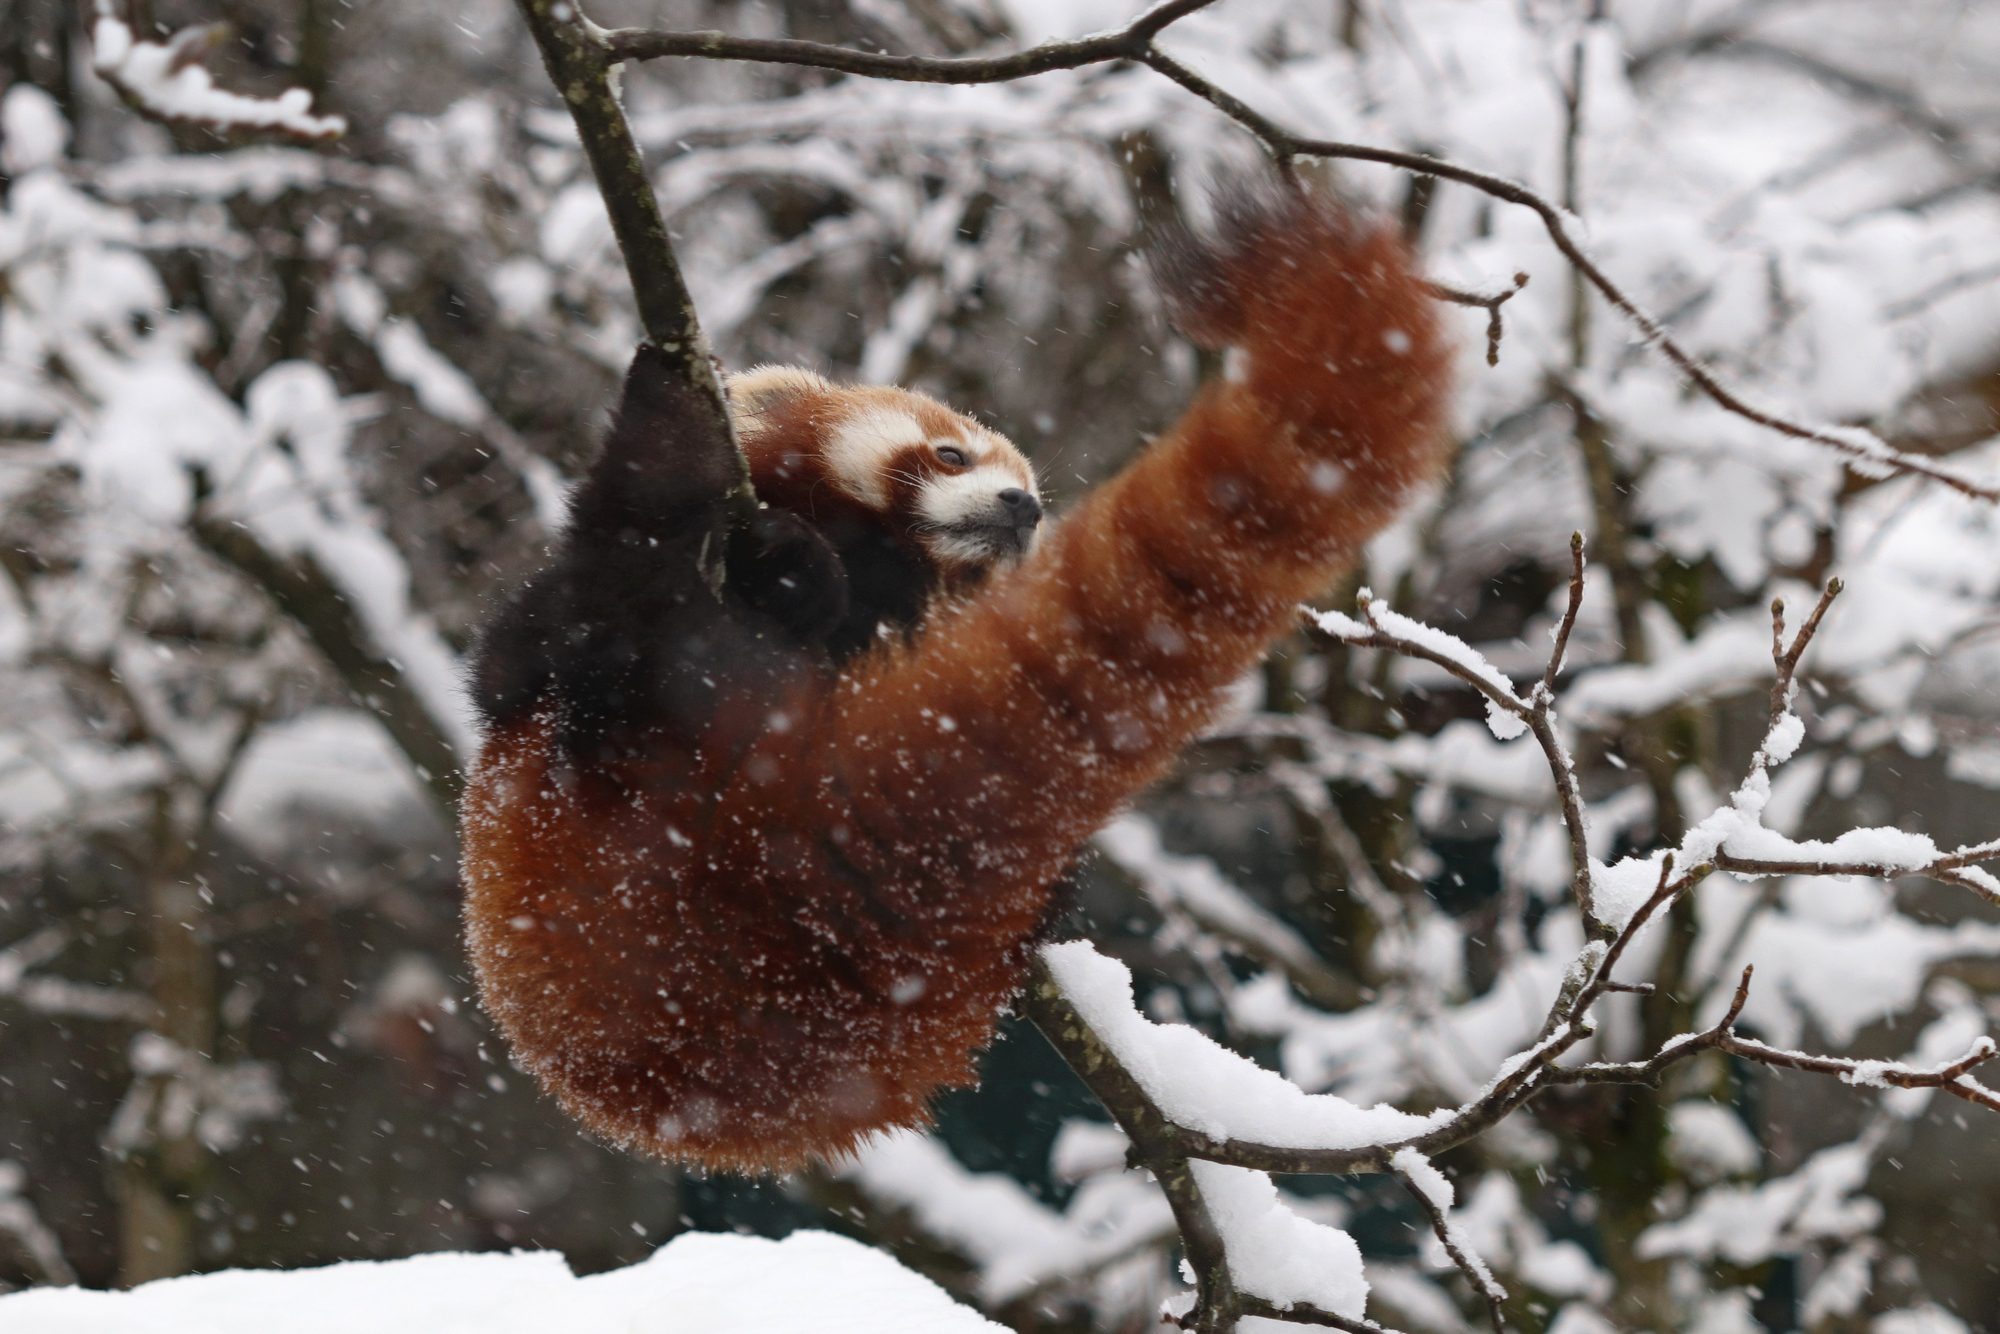 Roter Panda Shamina im Tierpark Hellabrunn